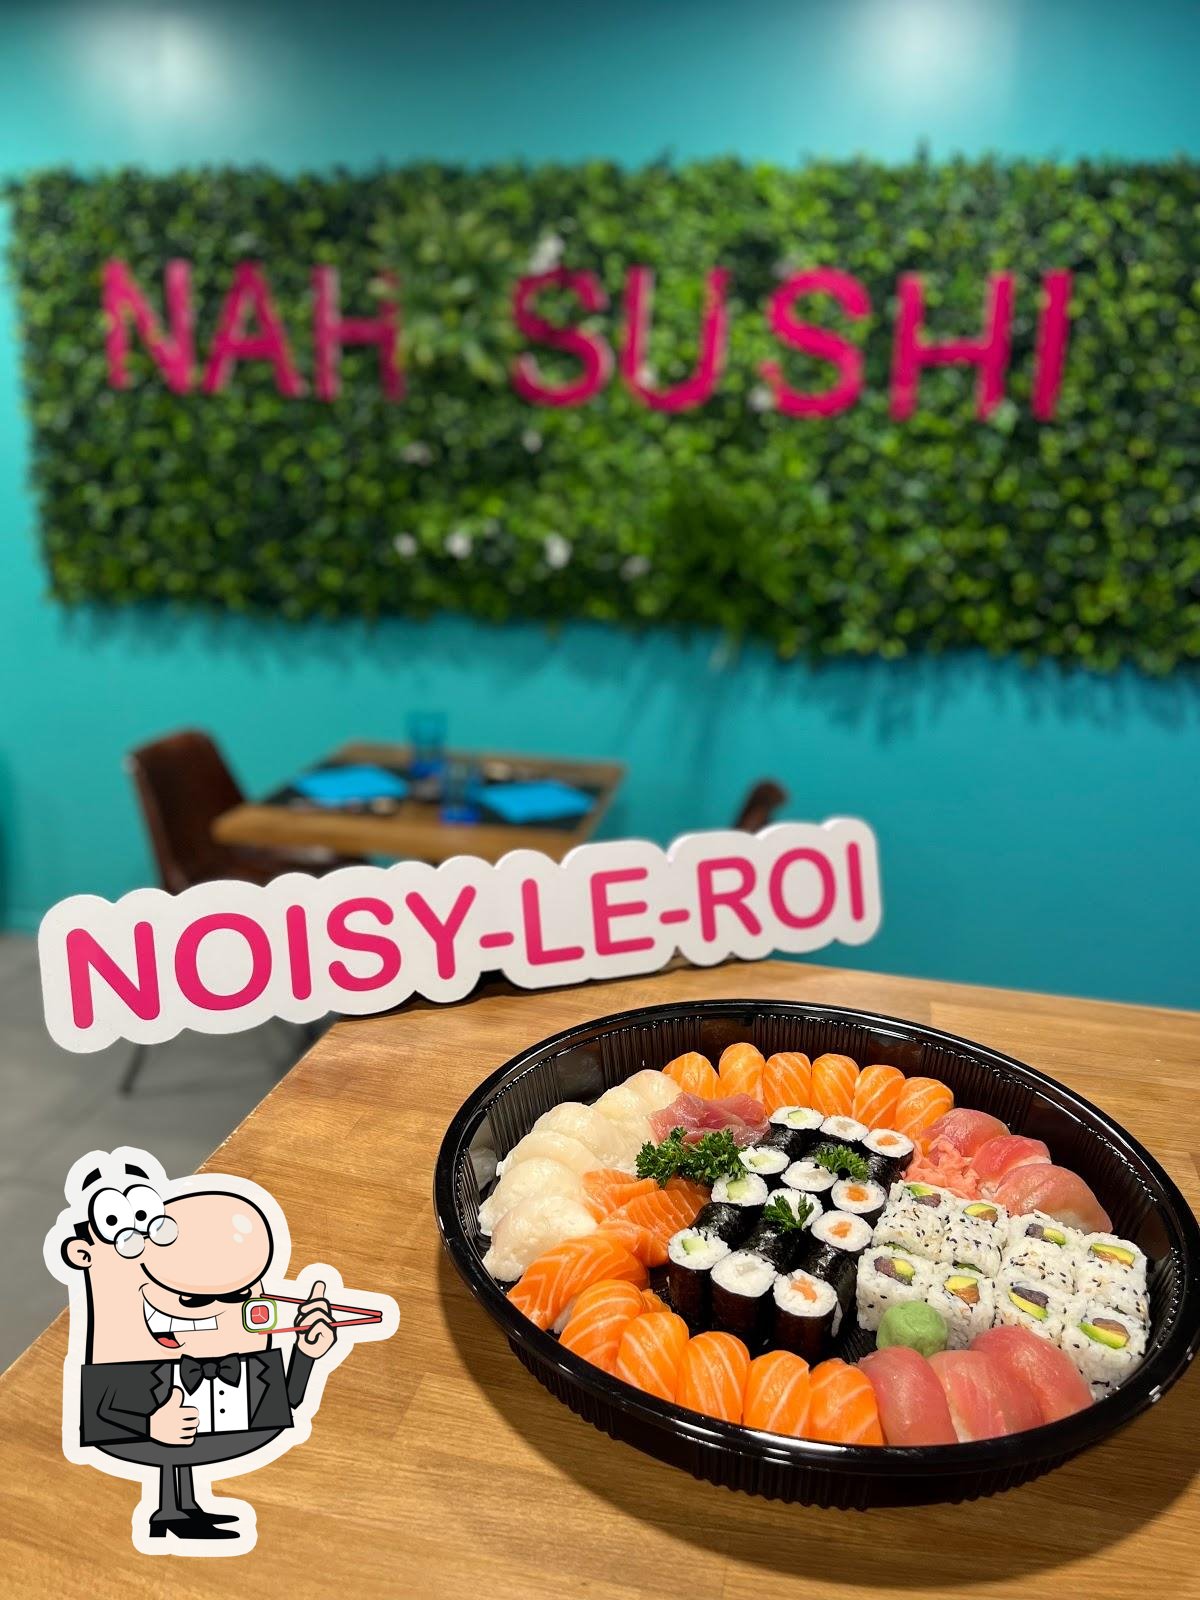 Sauce soja salée - Nahsushi Noisy Le Roi